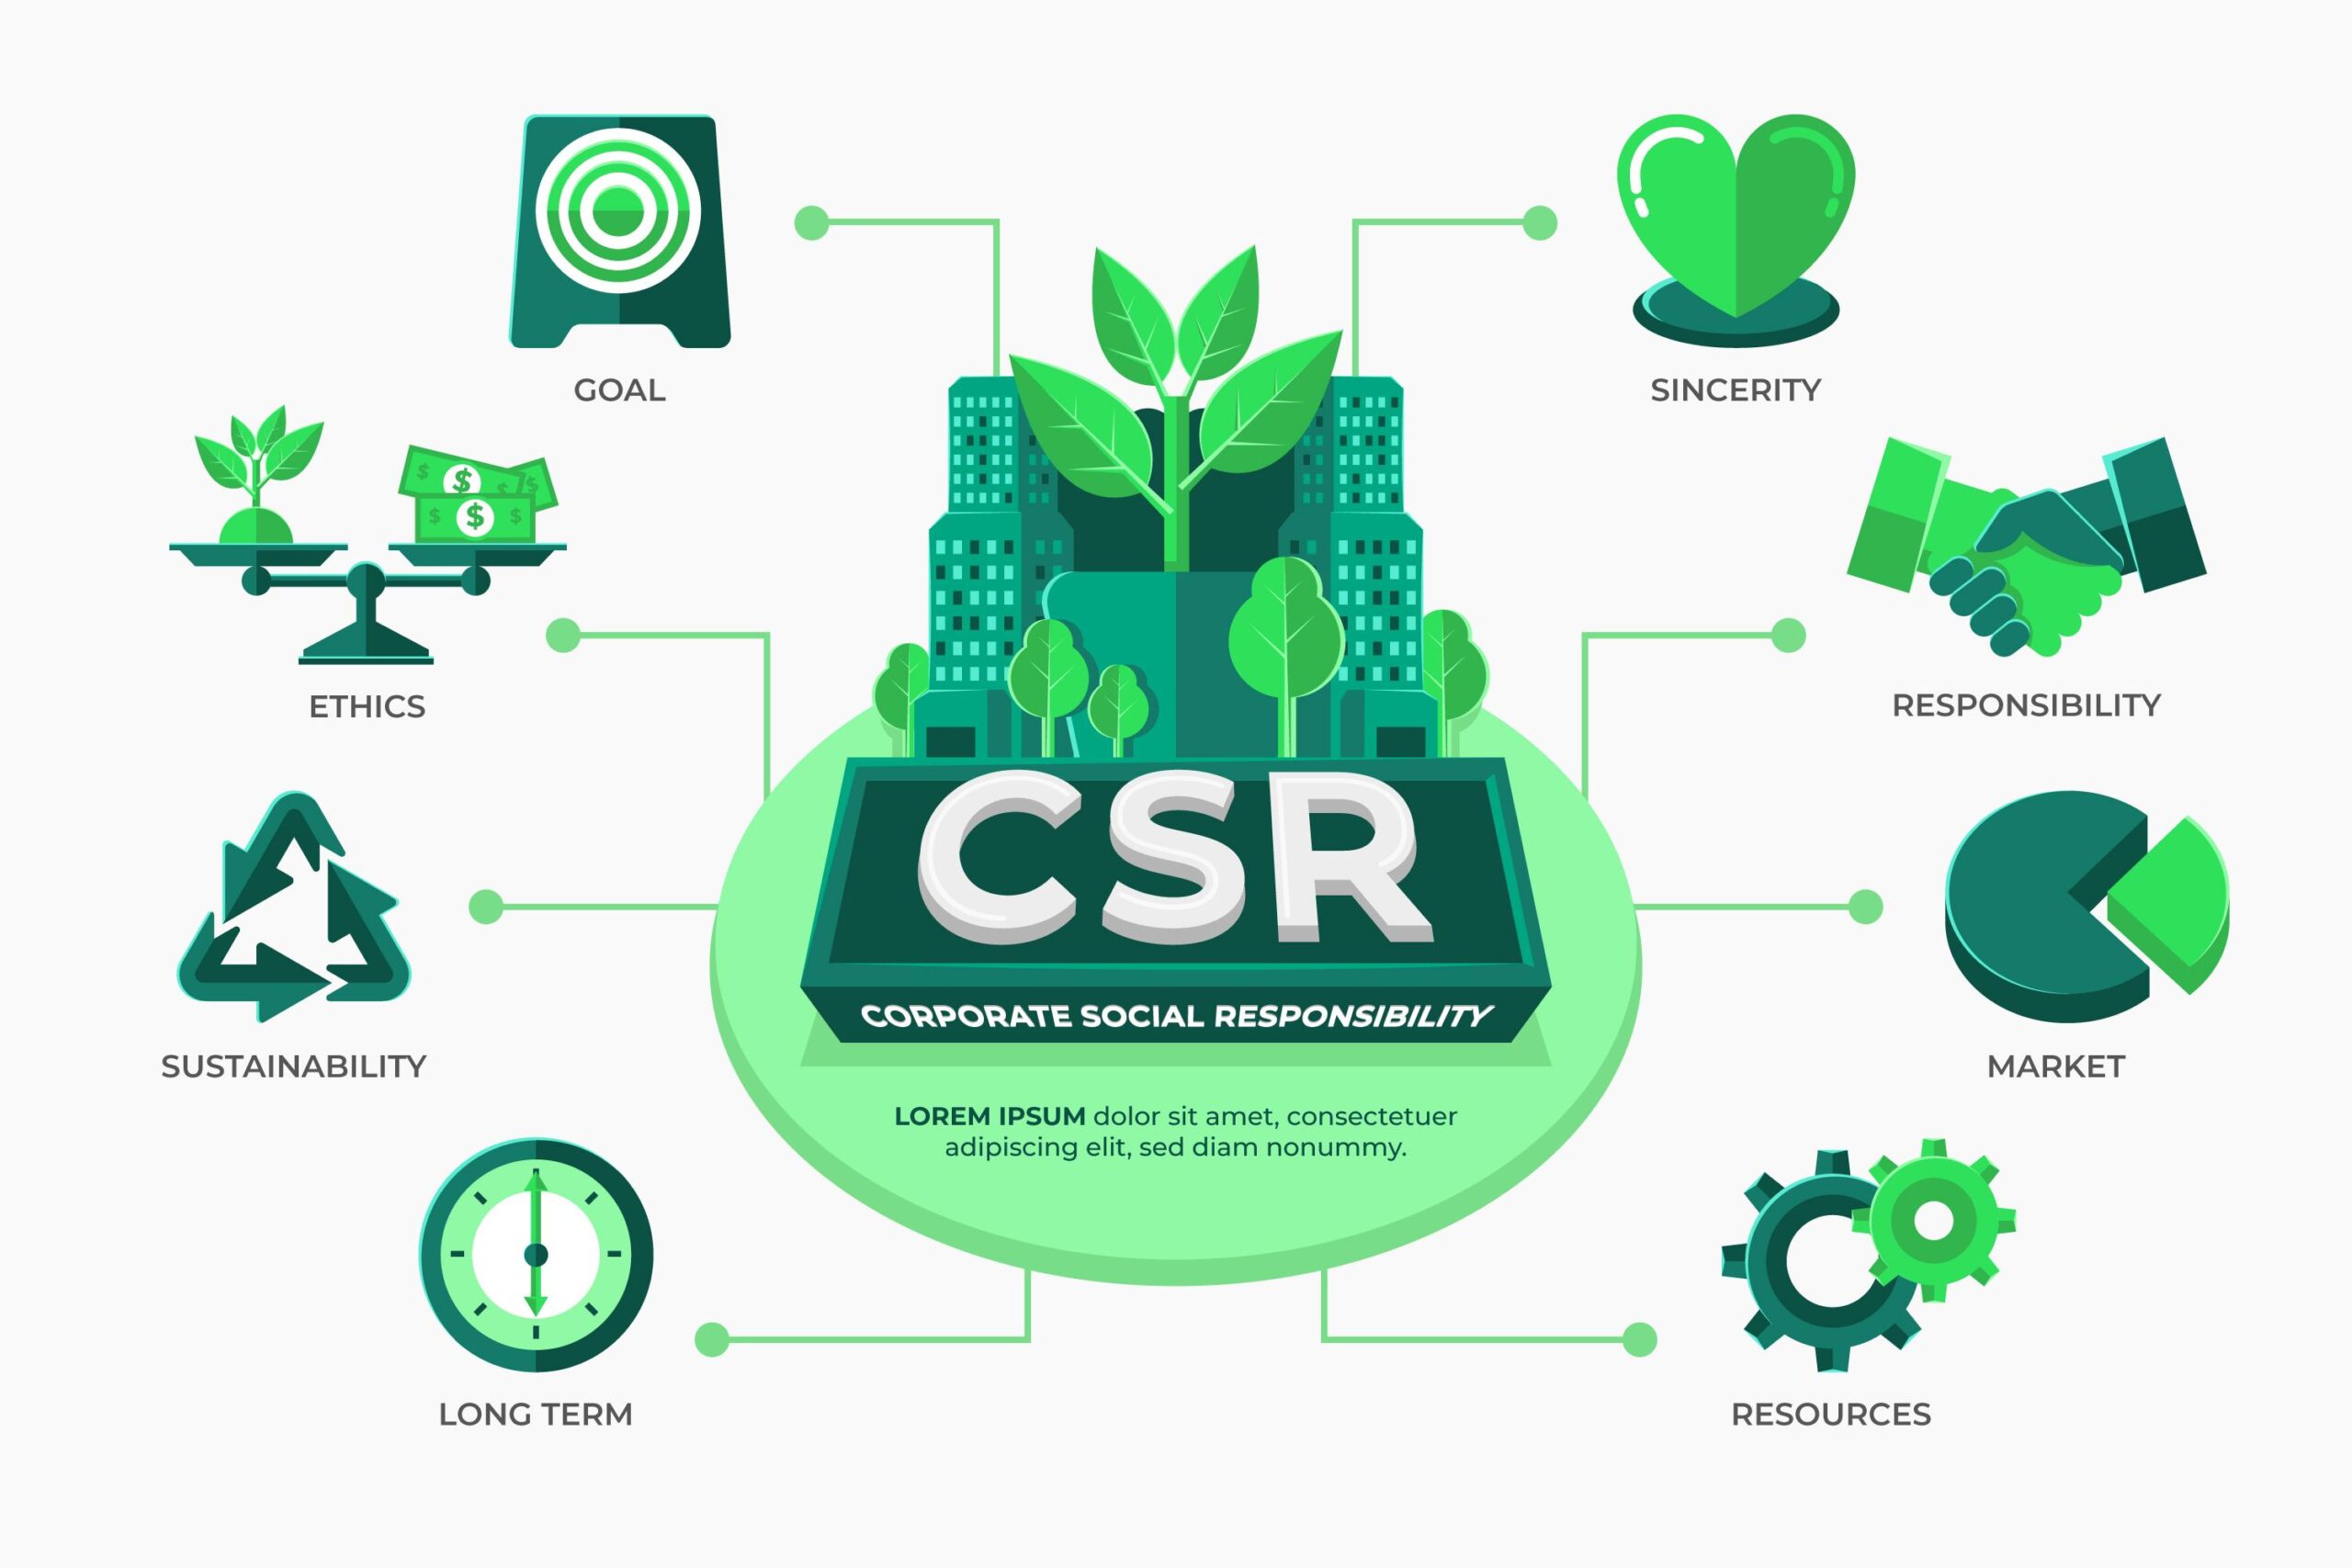 ประโยชน์ของการทำ CSR ในอุตสาหกรรมโรงงาน